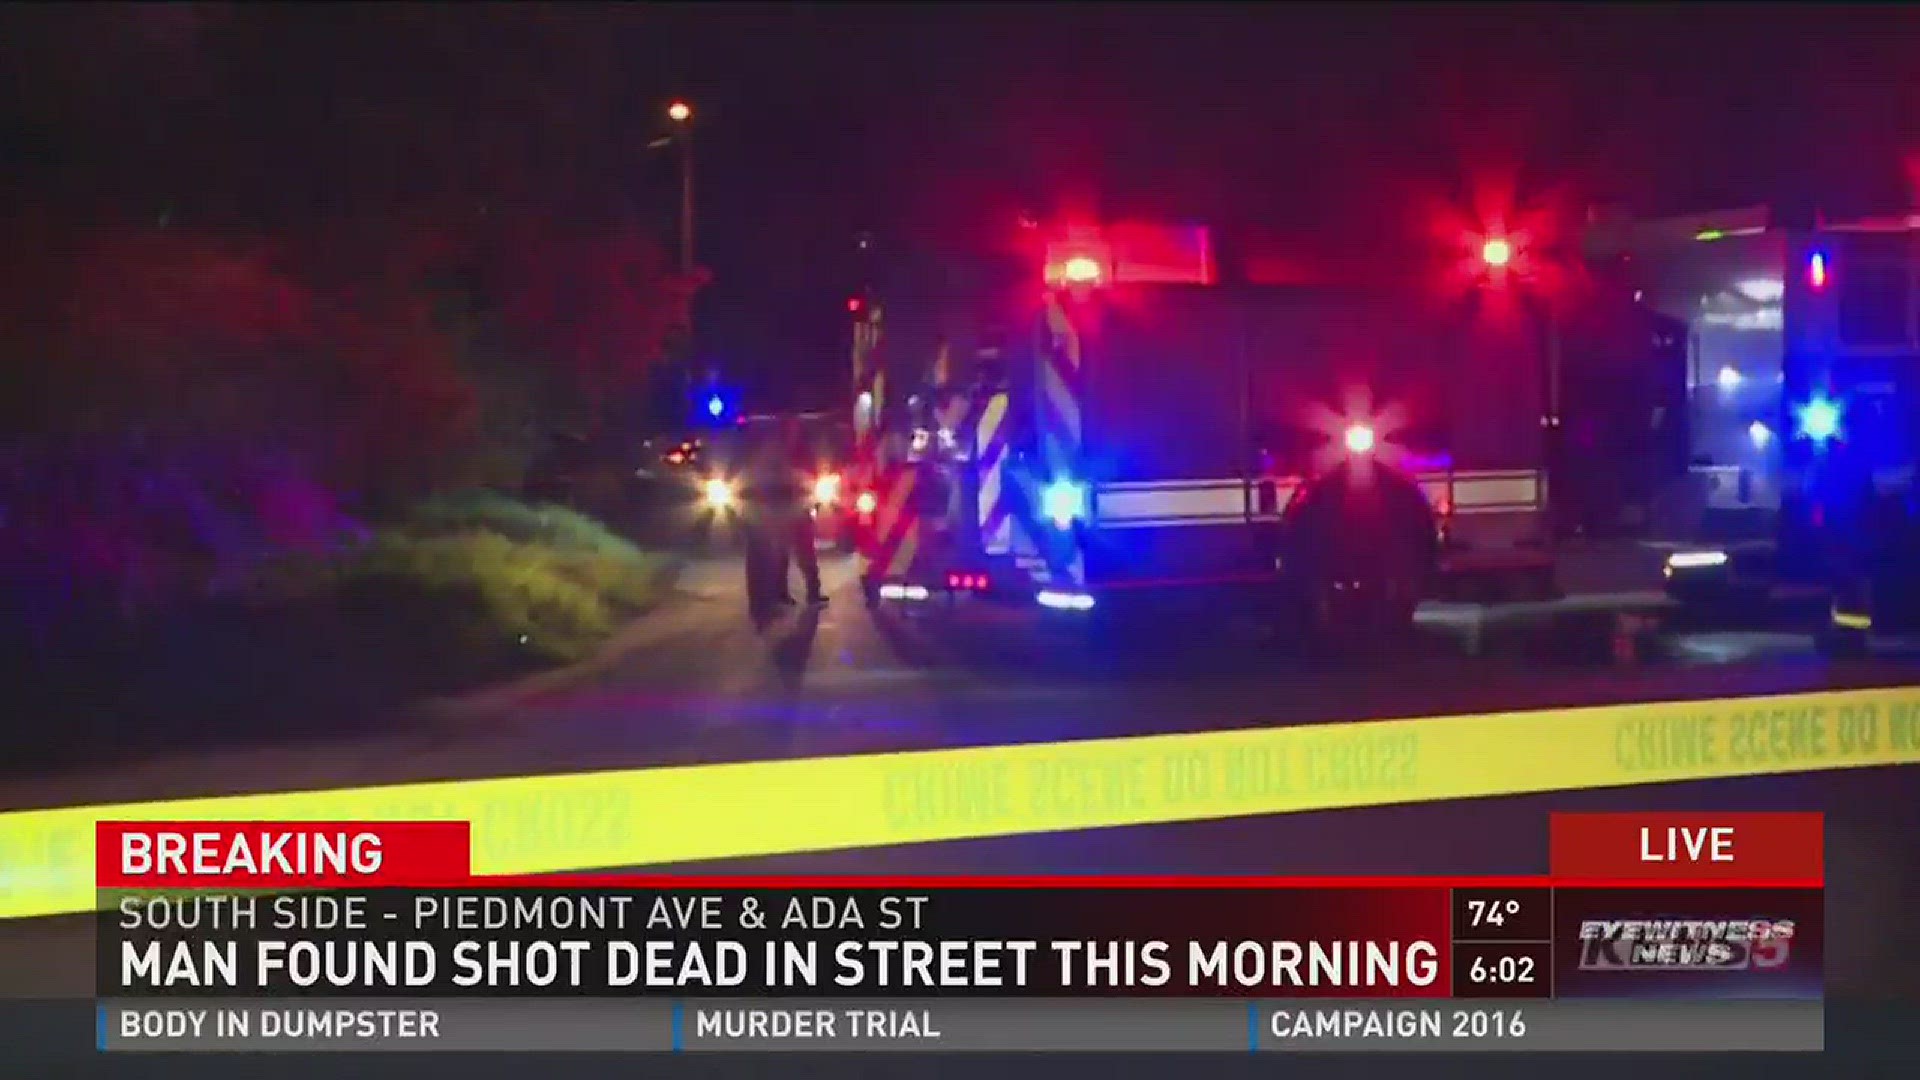 Man found shot dead in street